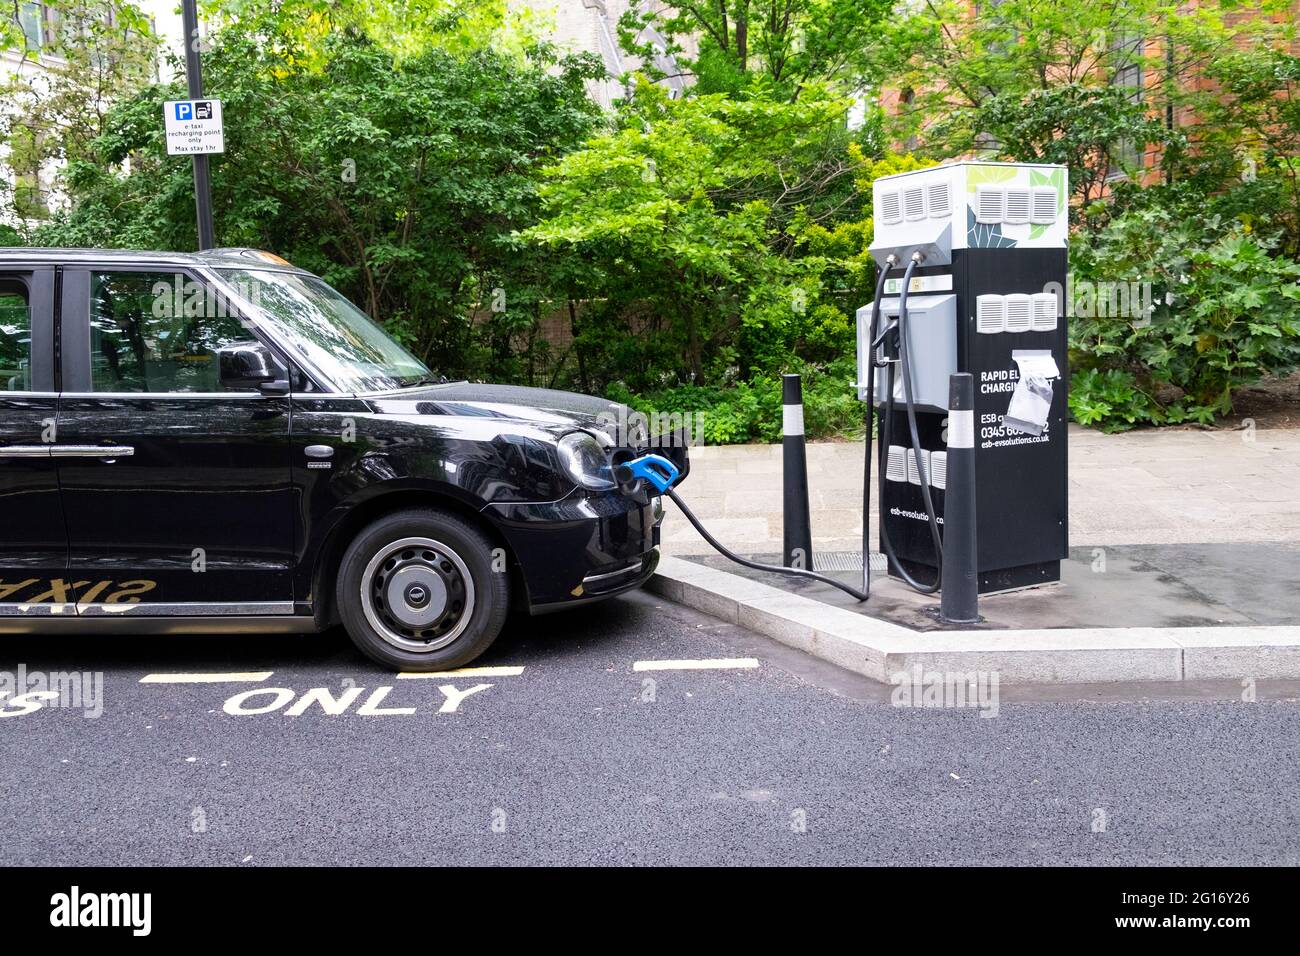 Schwarzes Taxi zum Aufladen des Fahrzeugs an einer elektrischen Ladestation in der City of London England Großbritannien Großbritannien KATHY DEWITT Stockfoto